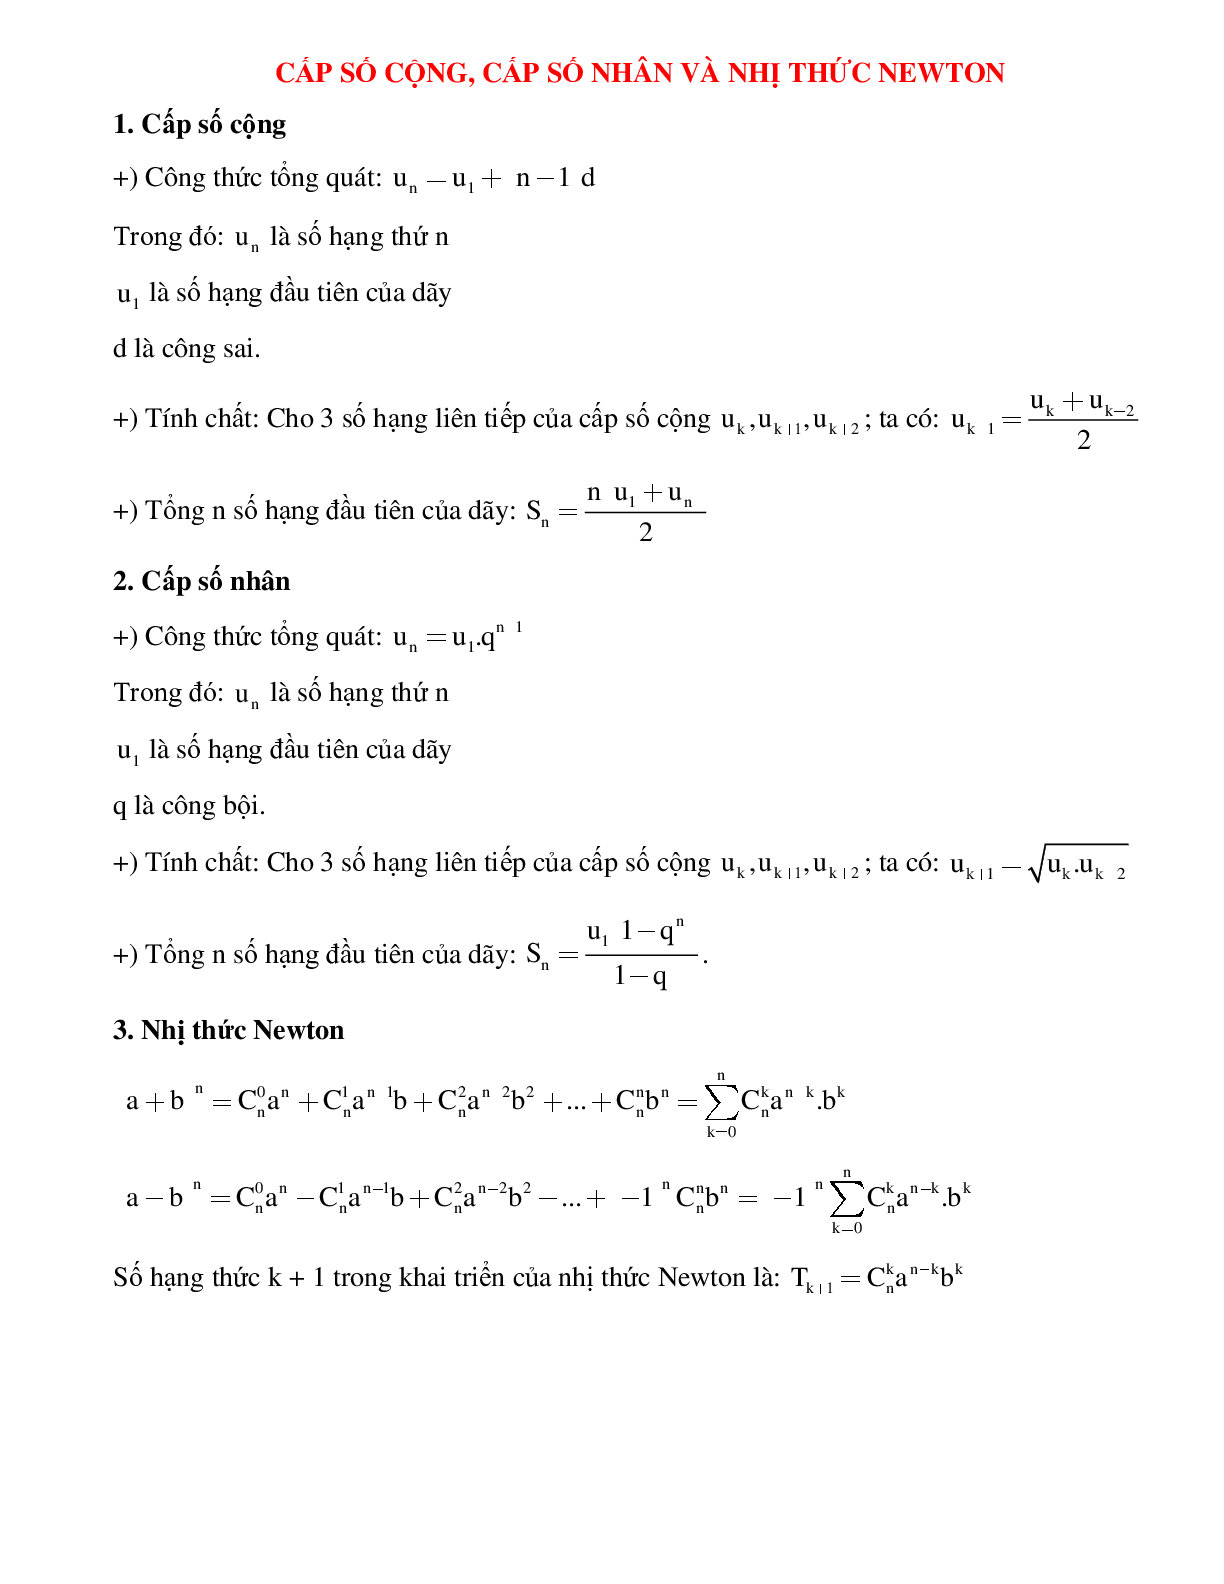 Cấp số cộng, cấp số nhân, nhị thức Newton (trang 1)